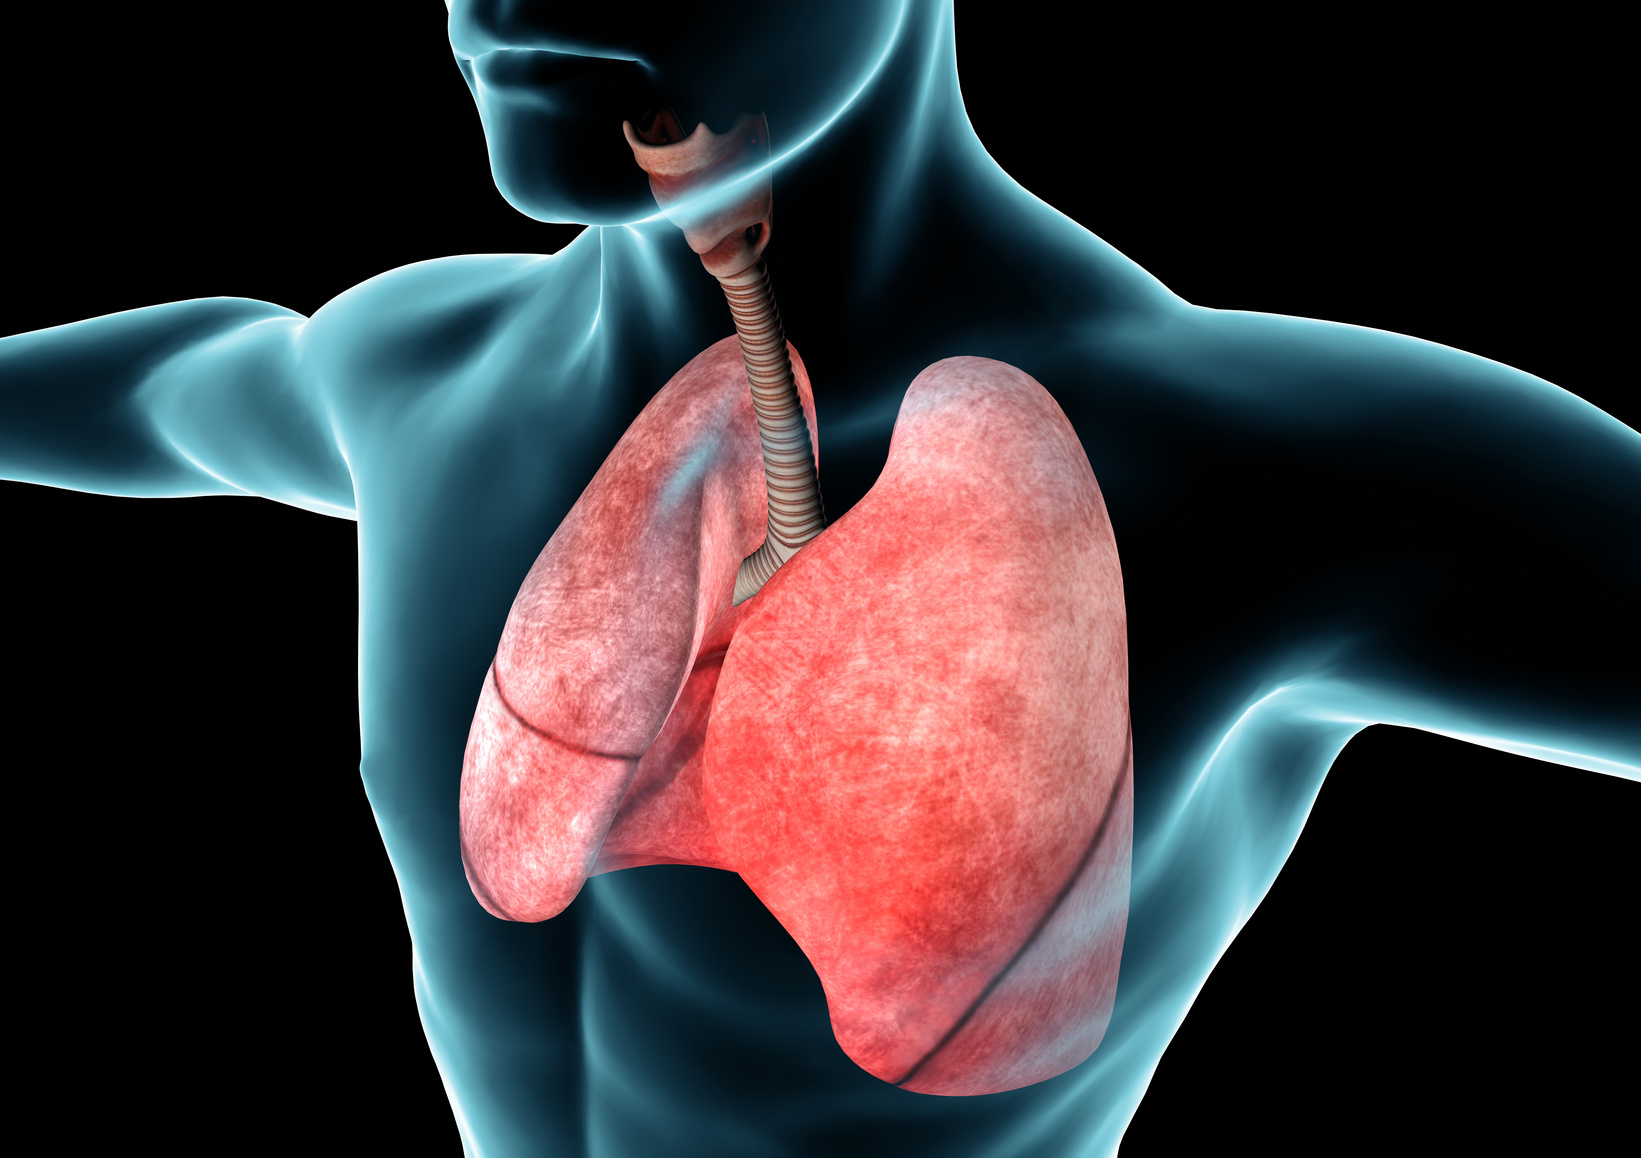 症状・疾患別受診すべき医療機関－⑯呼吸器の疾患・症状：呼吸器内科、呼吸器外科